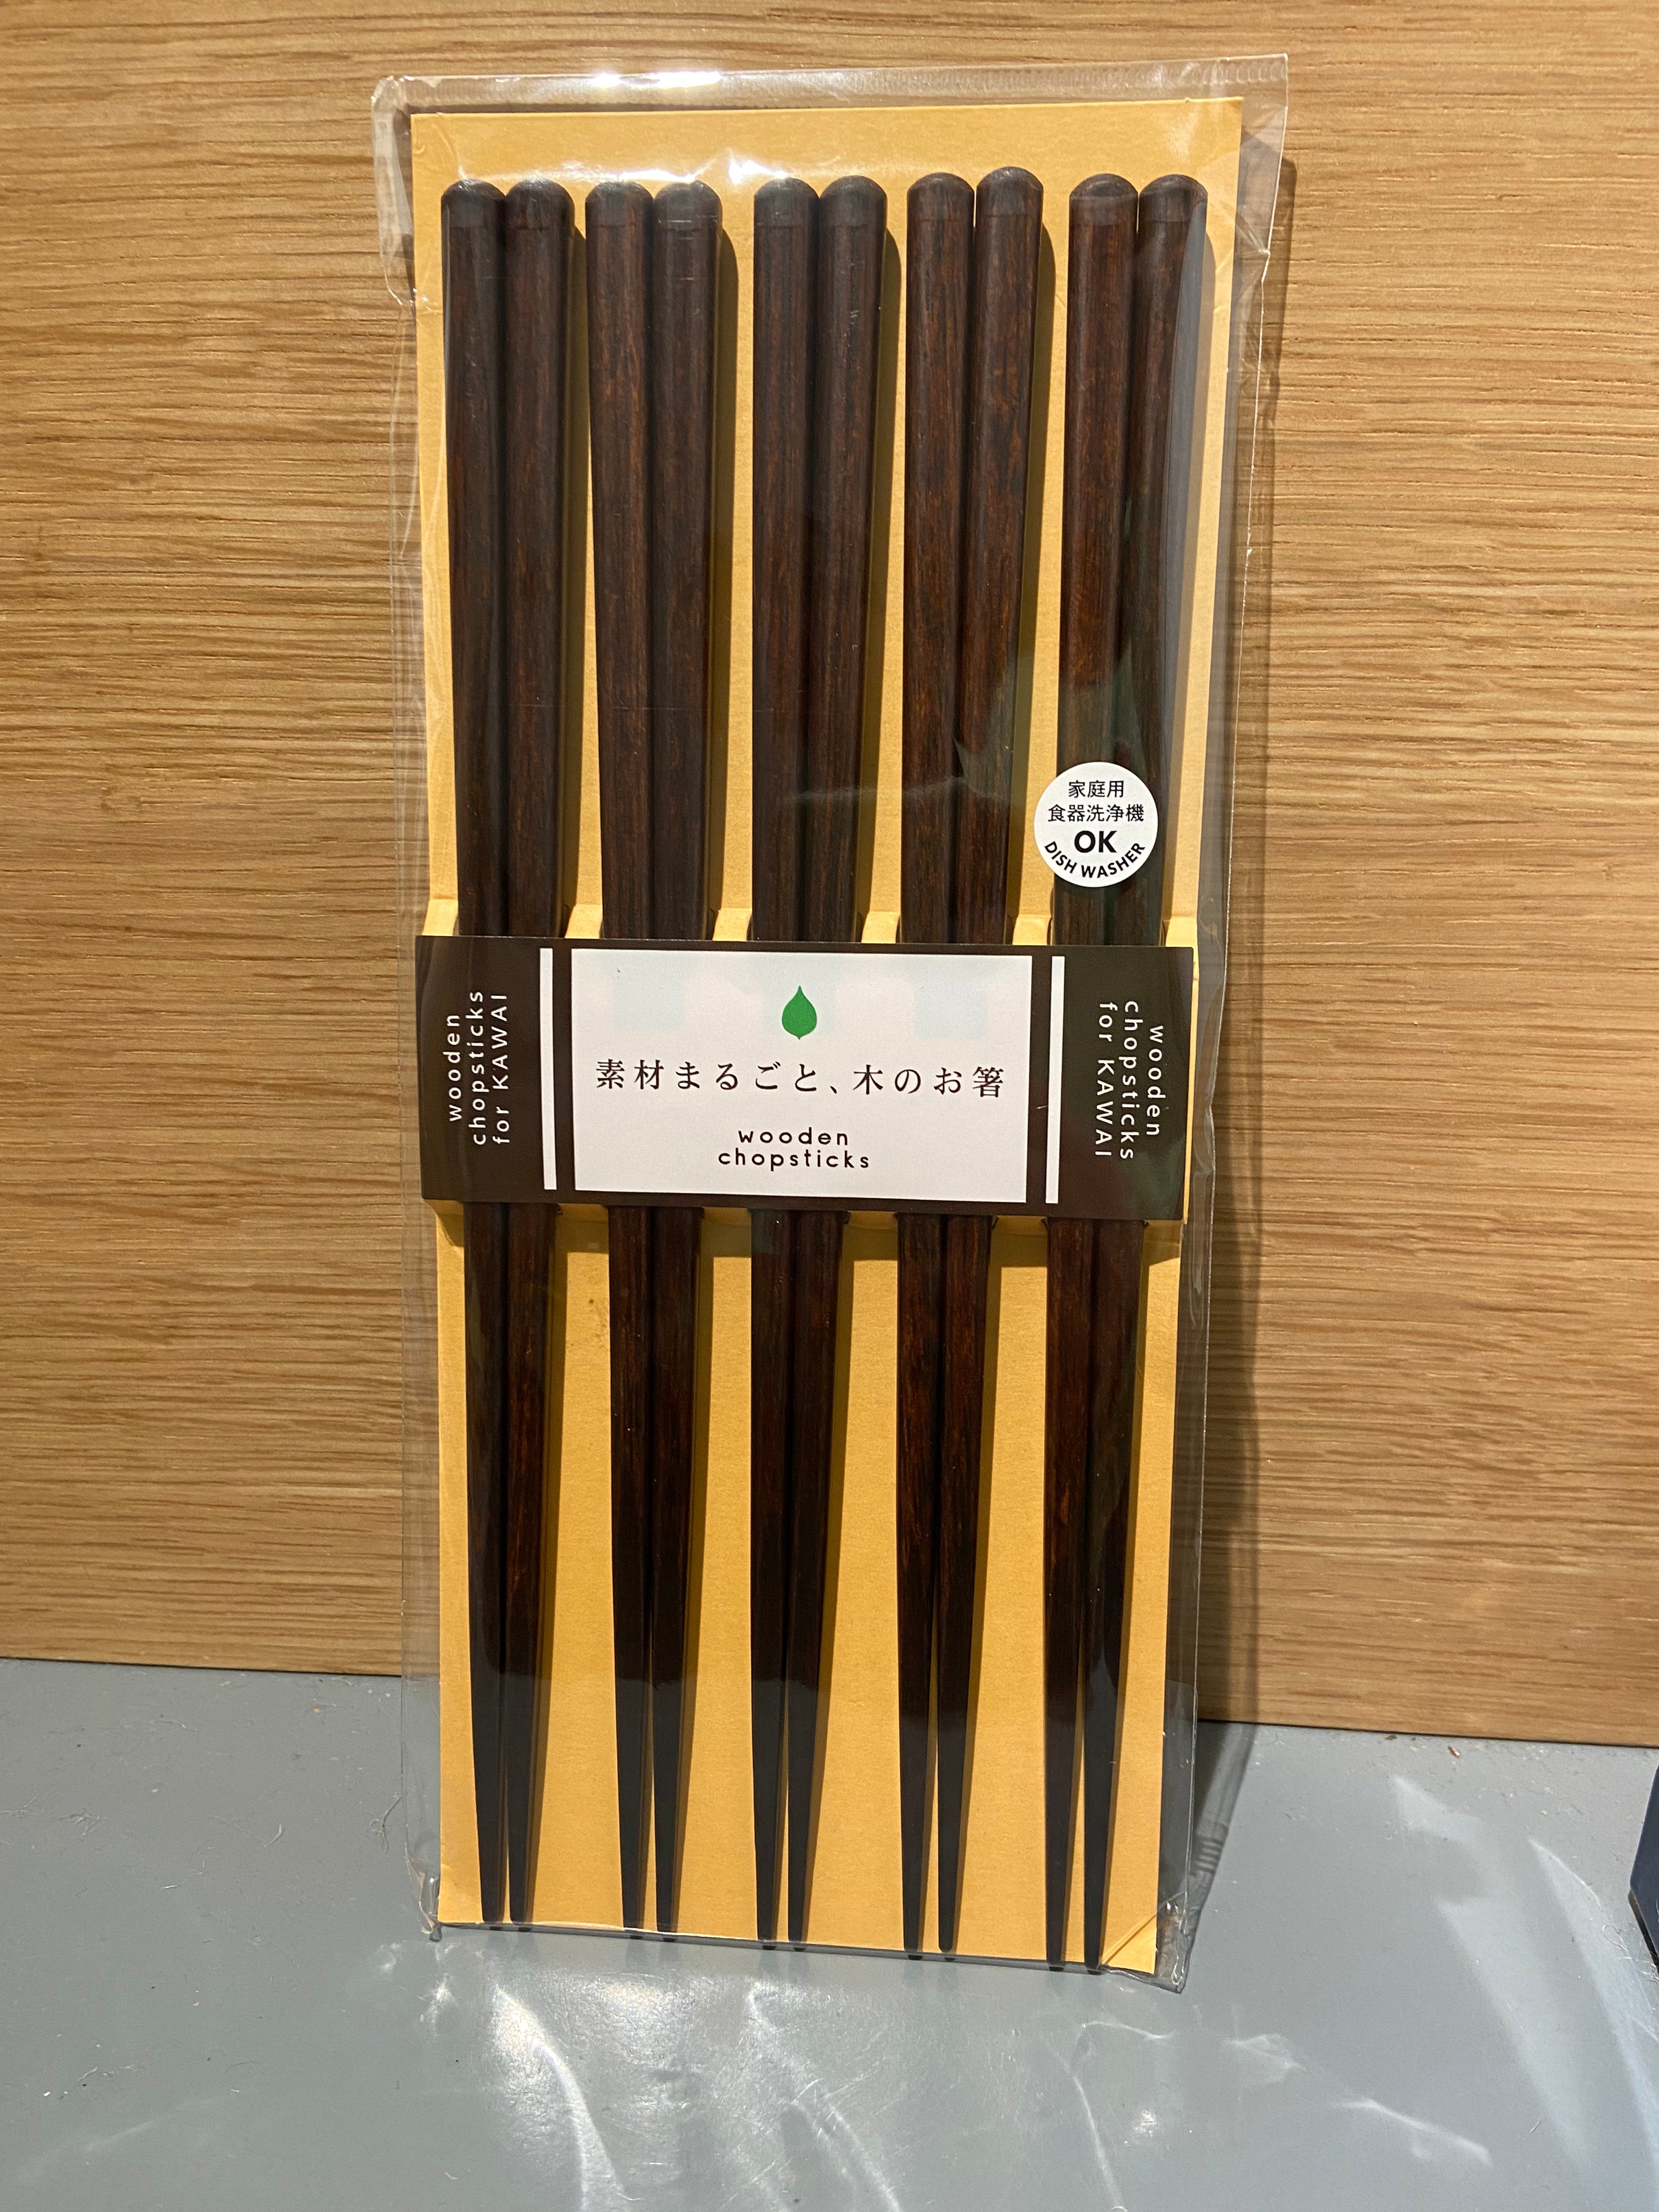 Wooden chopsticks, dark brown